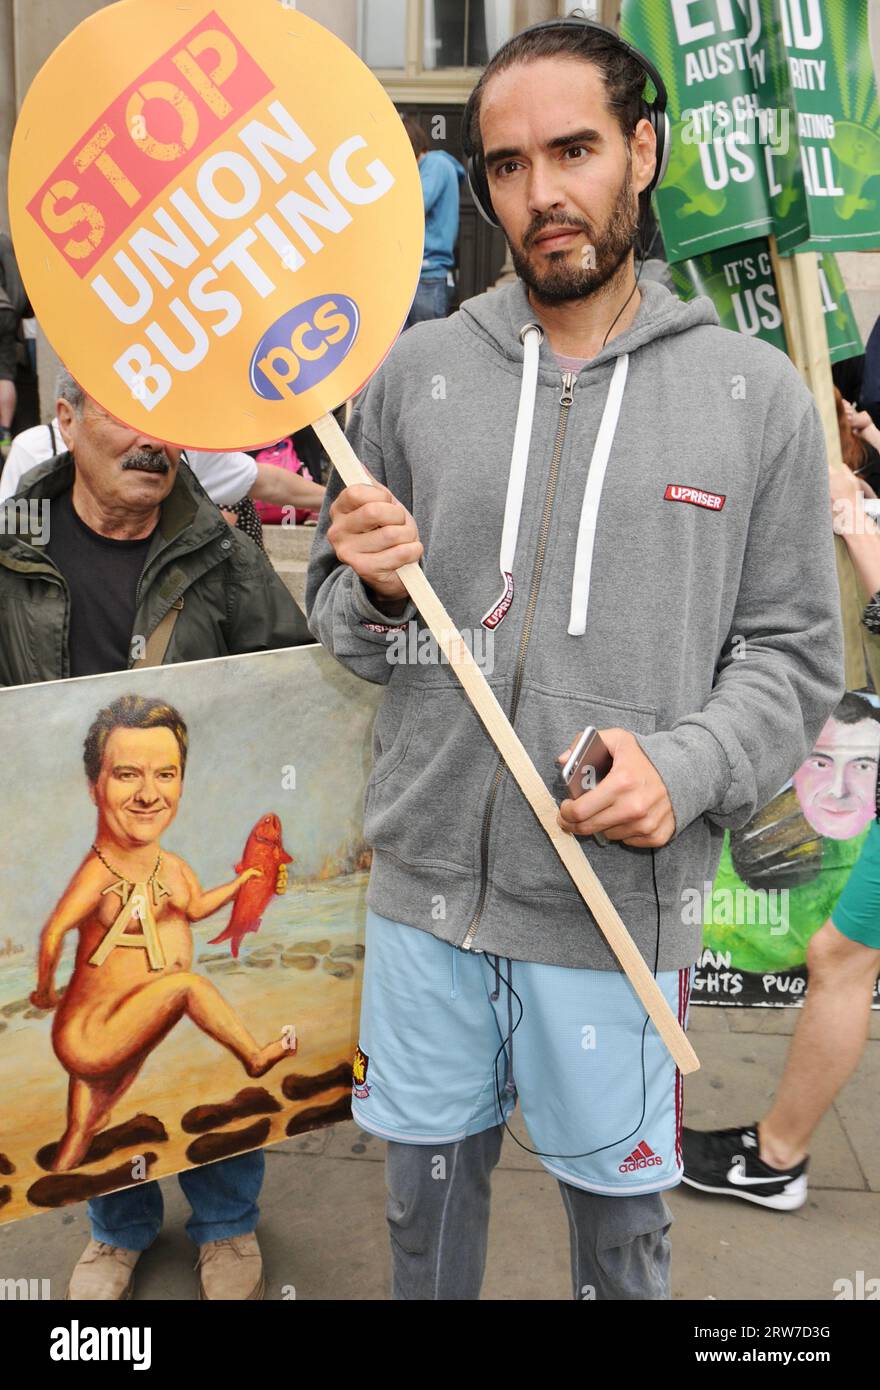 Russell Brand, marche anti-austérité, Banque d'Angleterre, ville de Londres, Royaume-Uni Banque D'Images